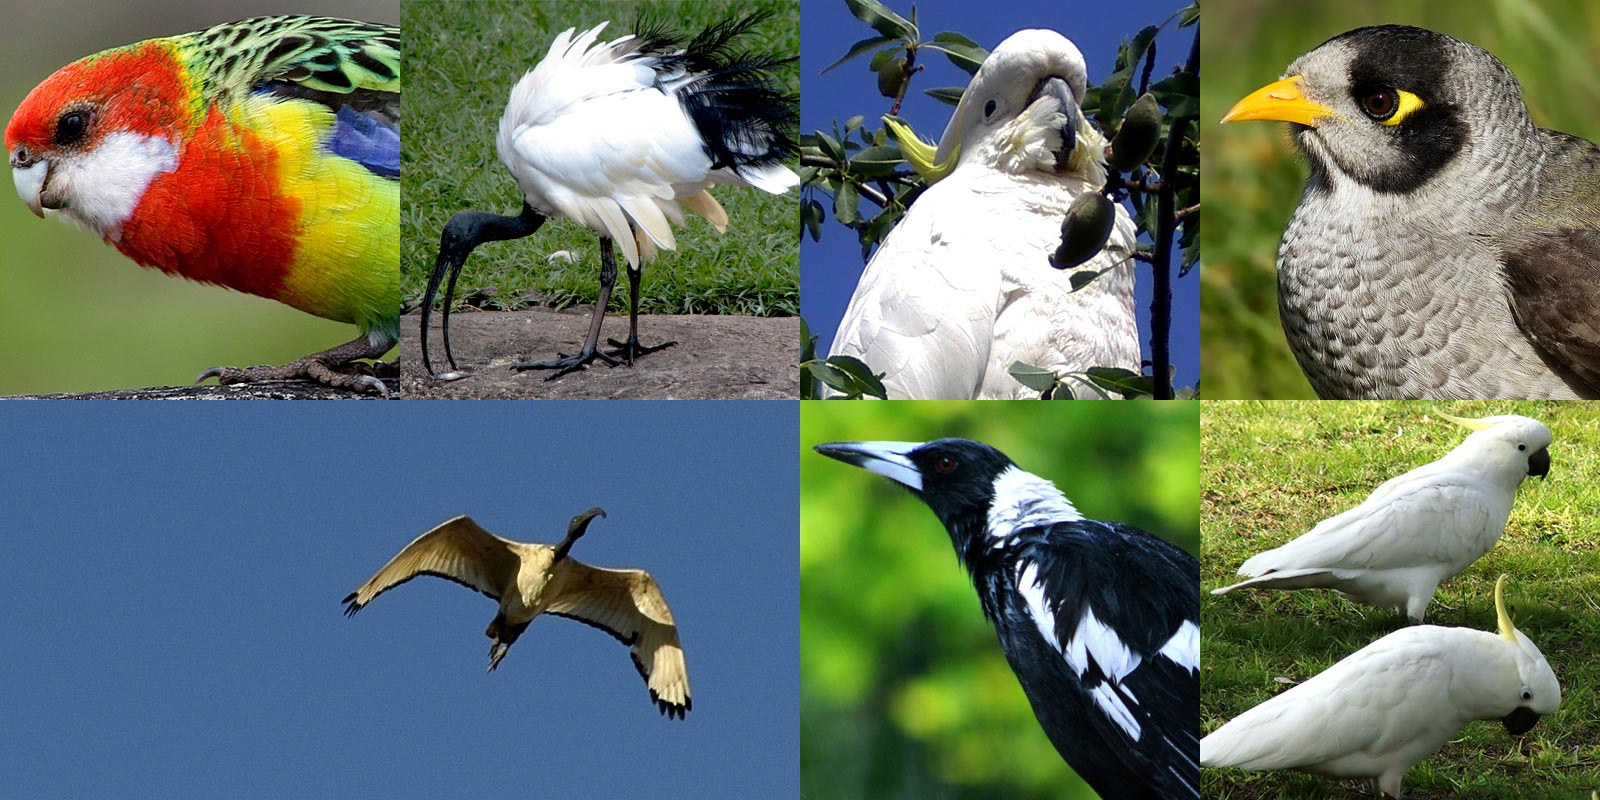 Roselle, magpie, ibis, cacatua. Benvenuti in Australia, il paradiso degli uccelli